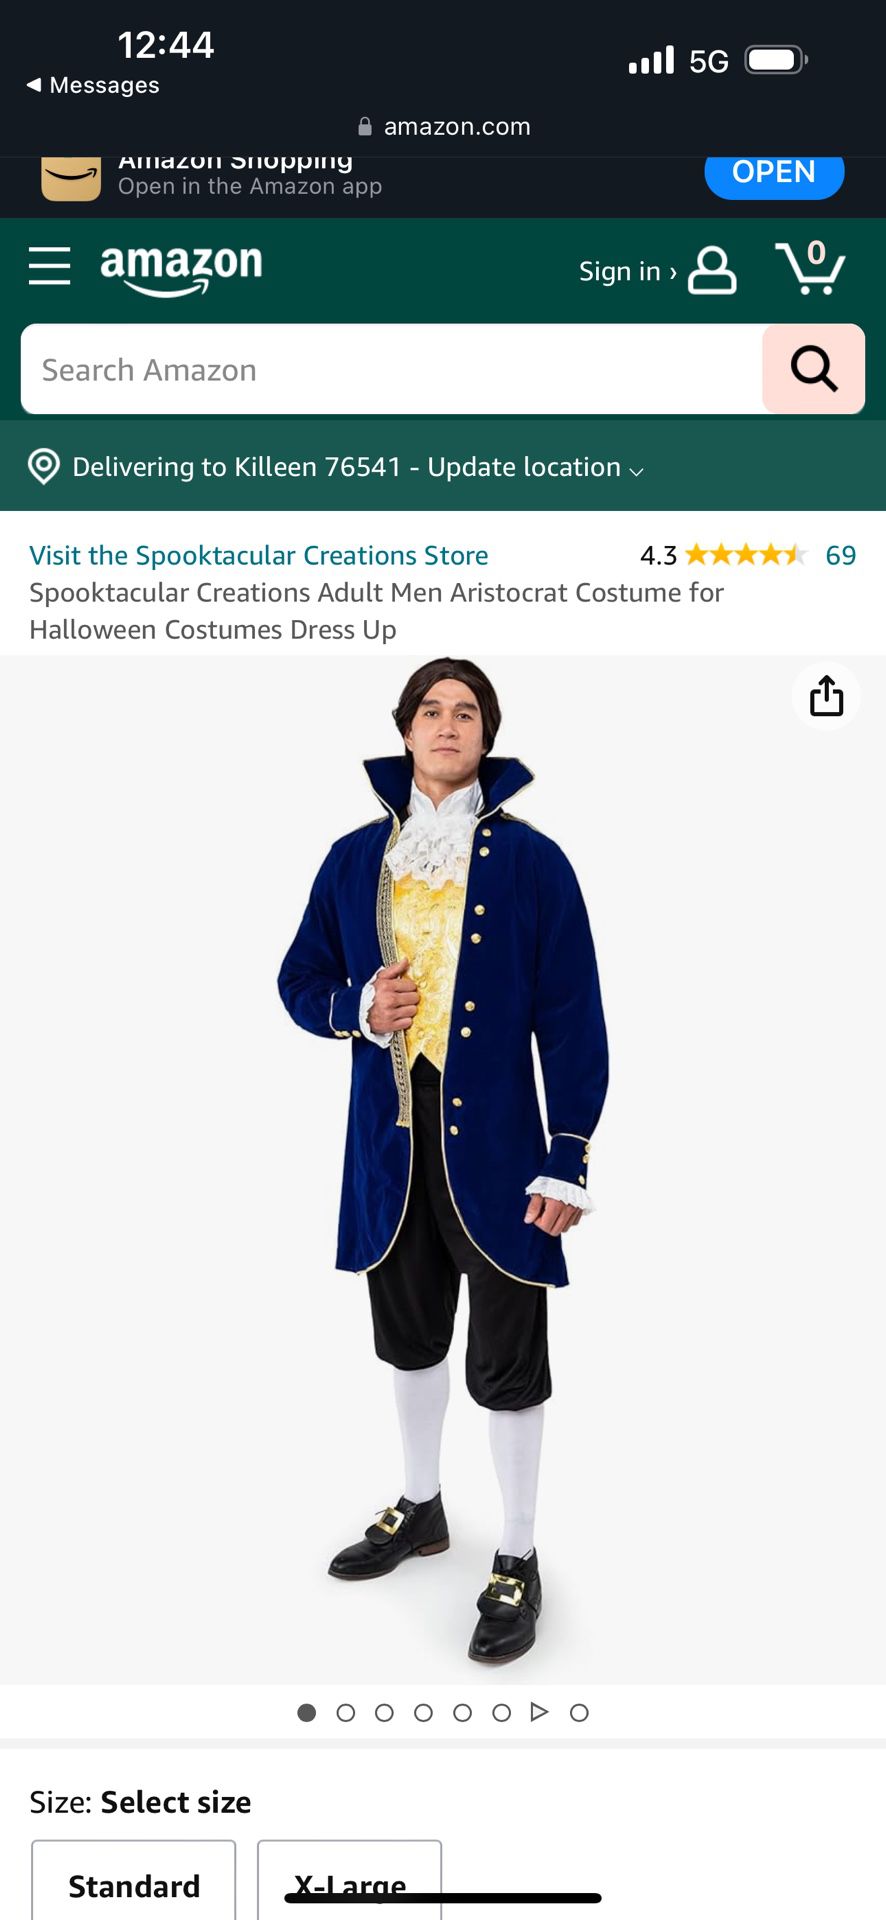 Adult Men Aristocrat Costume for Halloween Costumes Dress Up